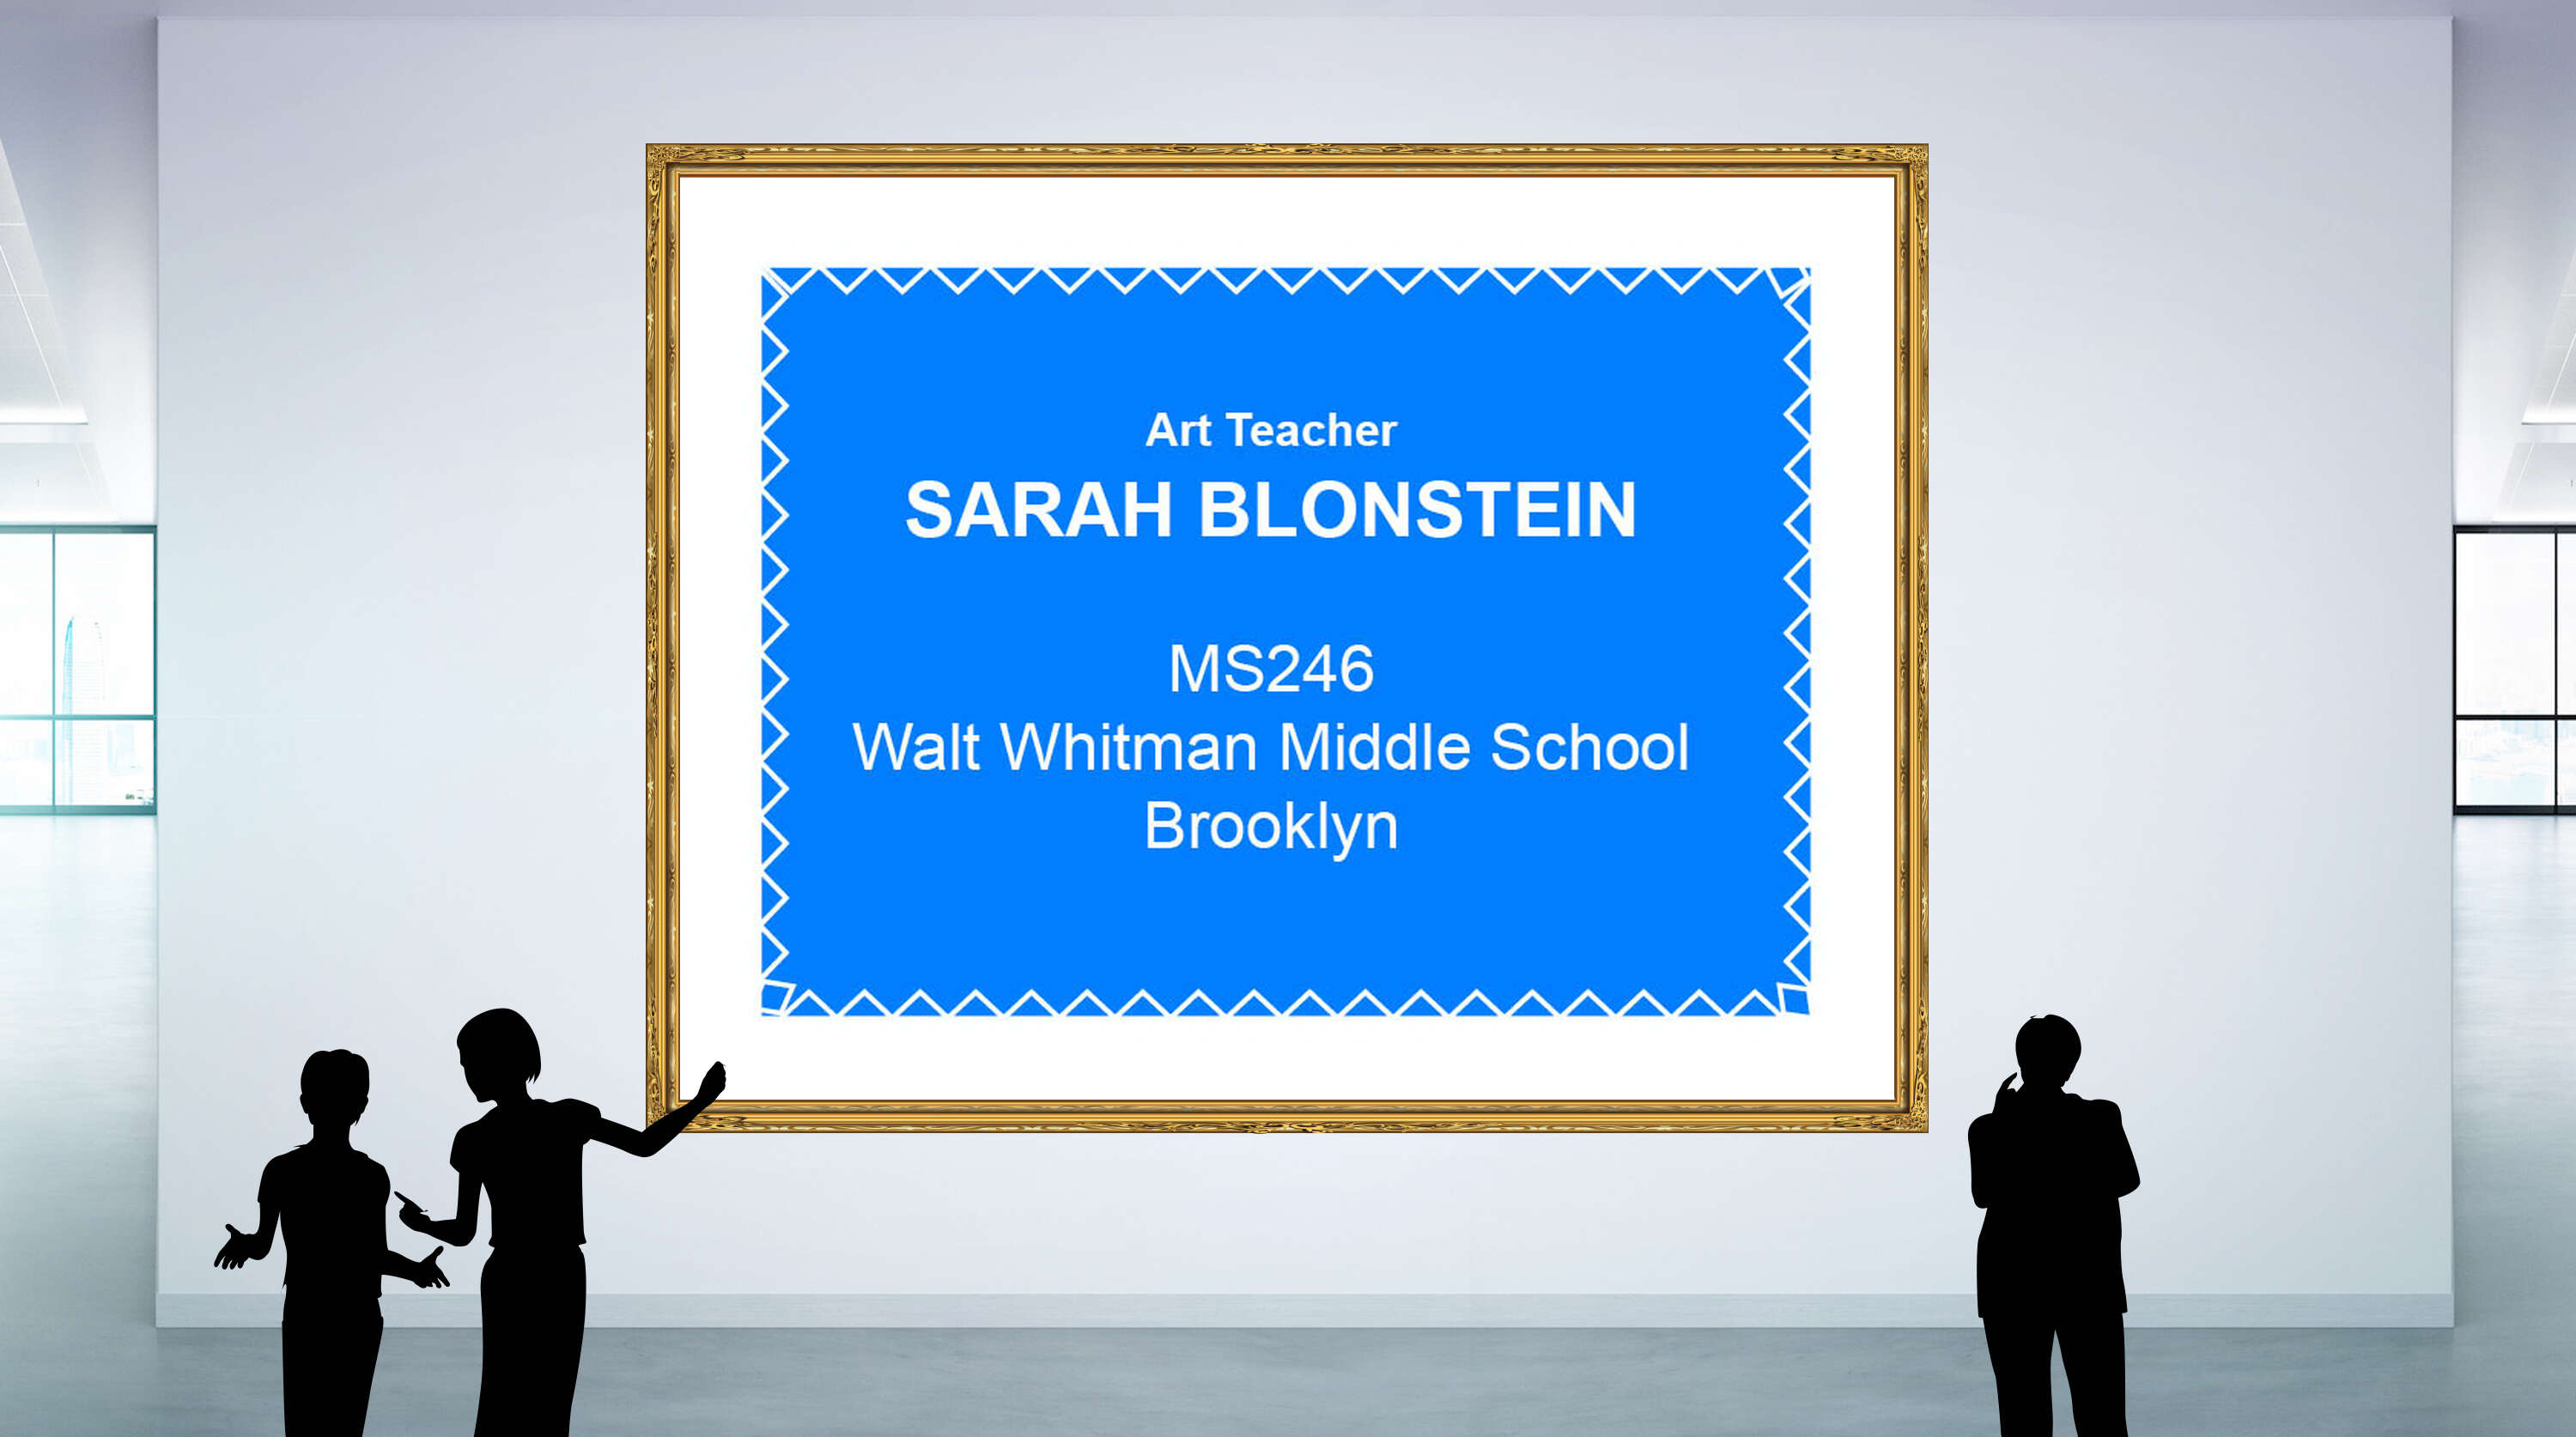 Sarah Blonstein, MS246 Walt Whitman Middle School